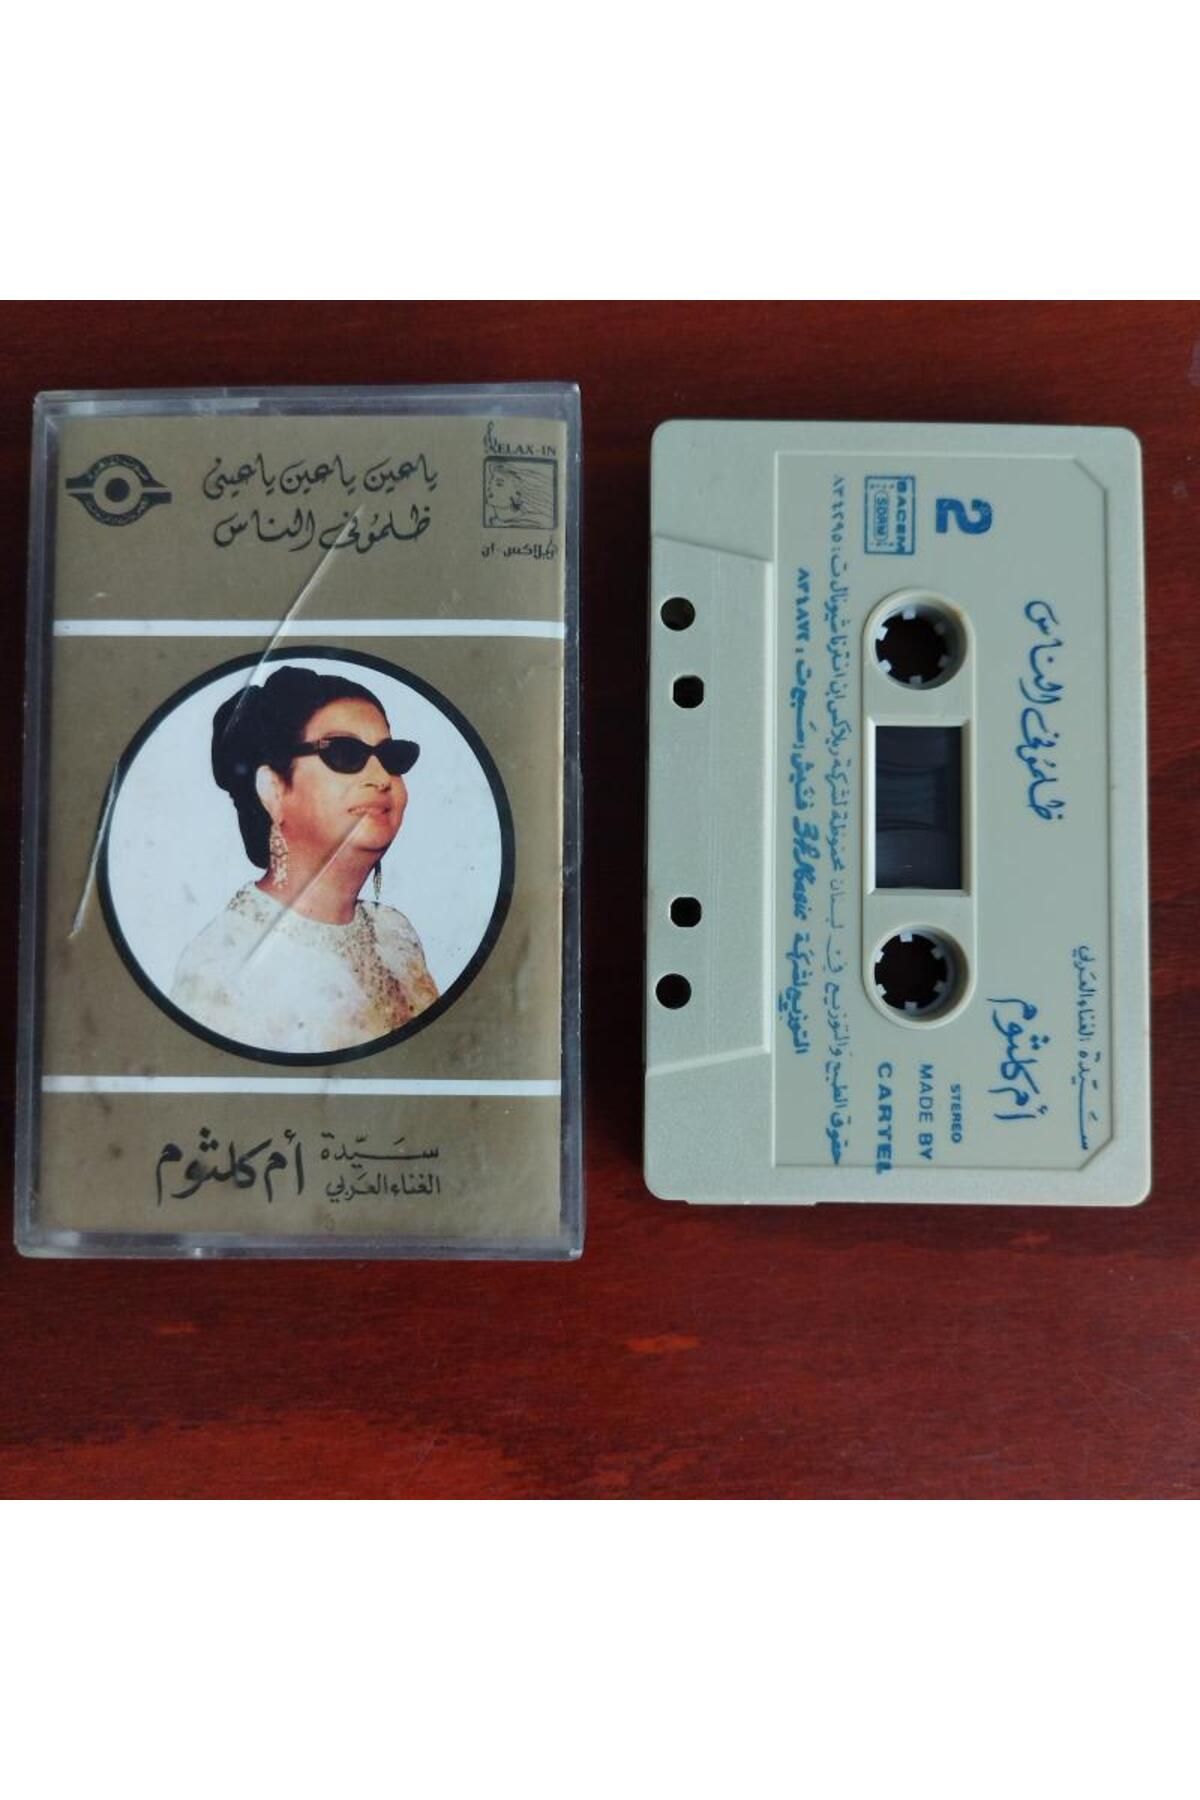 Cassette Om Kalsoum / Ümmü Gülsüm – Zalamouni El Nass/ Ya Ain Ya Ain - Lübnan Basım - 2. El Kaset